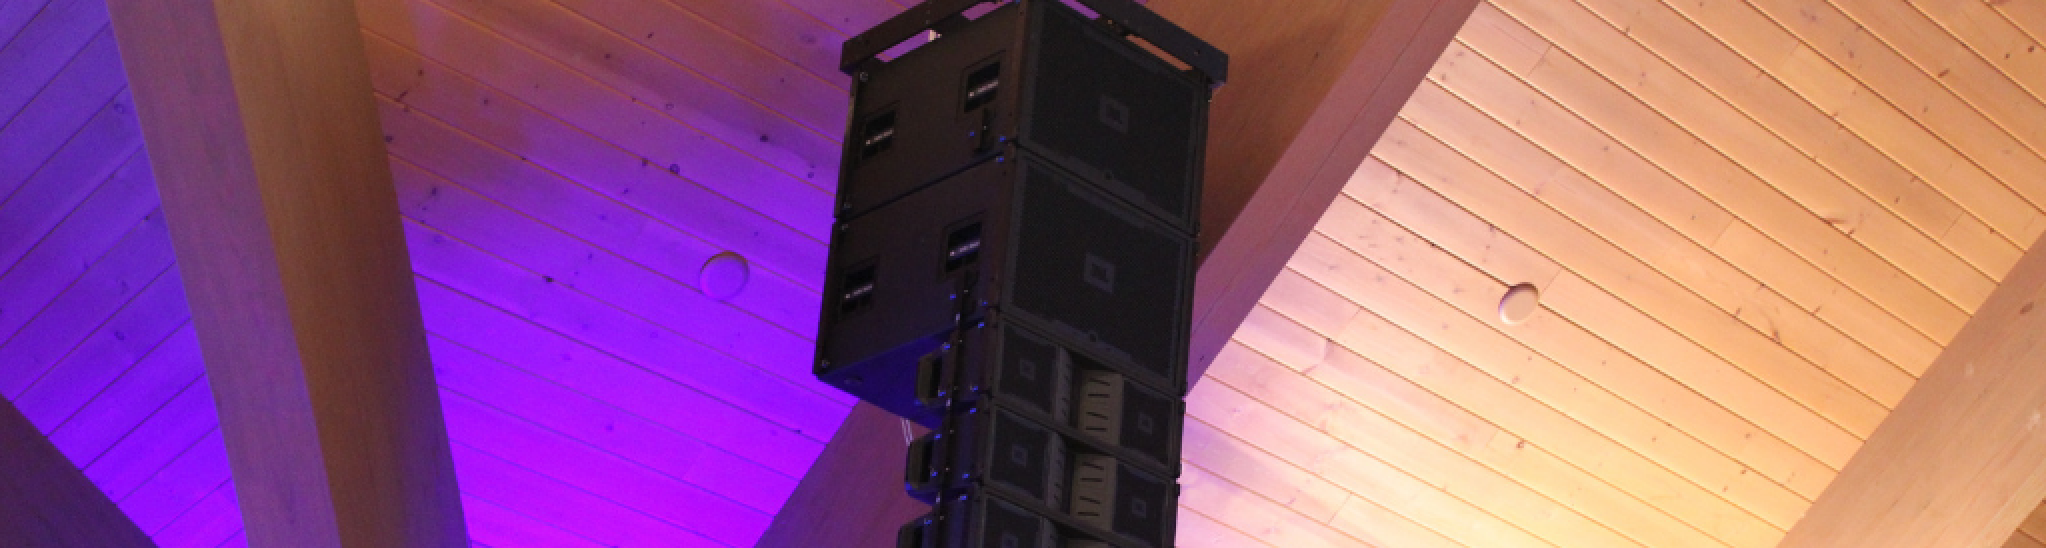 JBL speaker with lighting